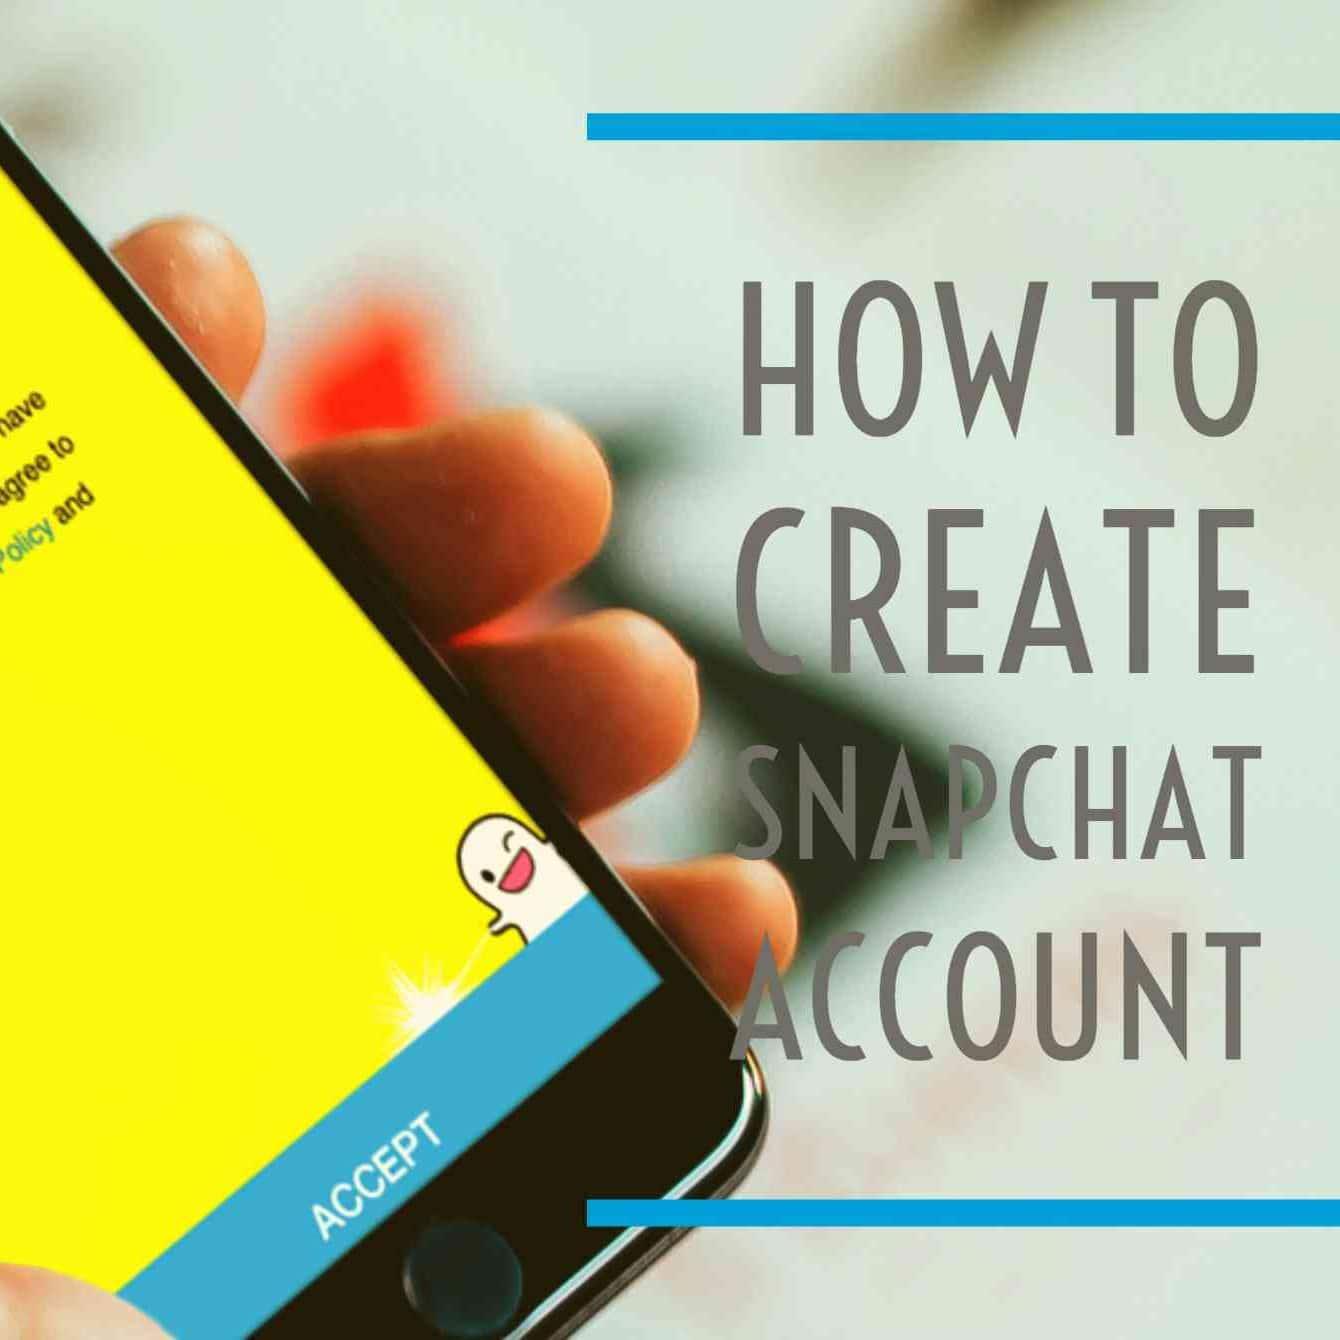 انشاء حساب سناب شات SnapChat جديد